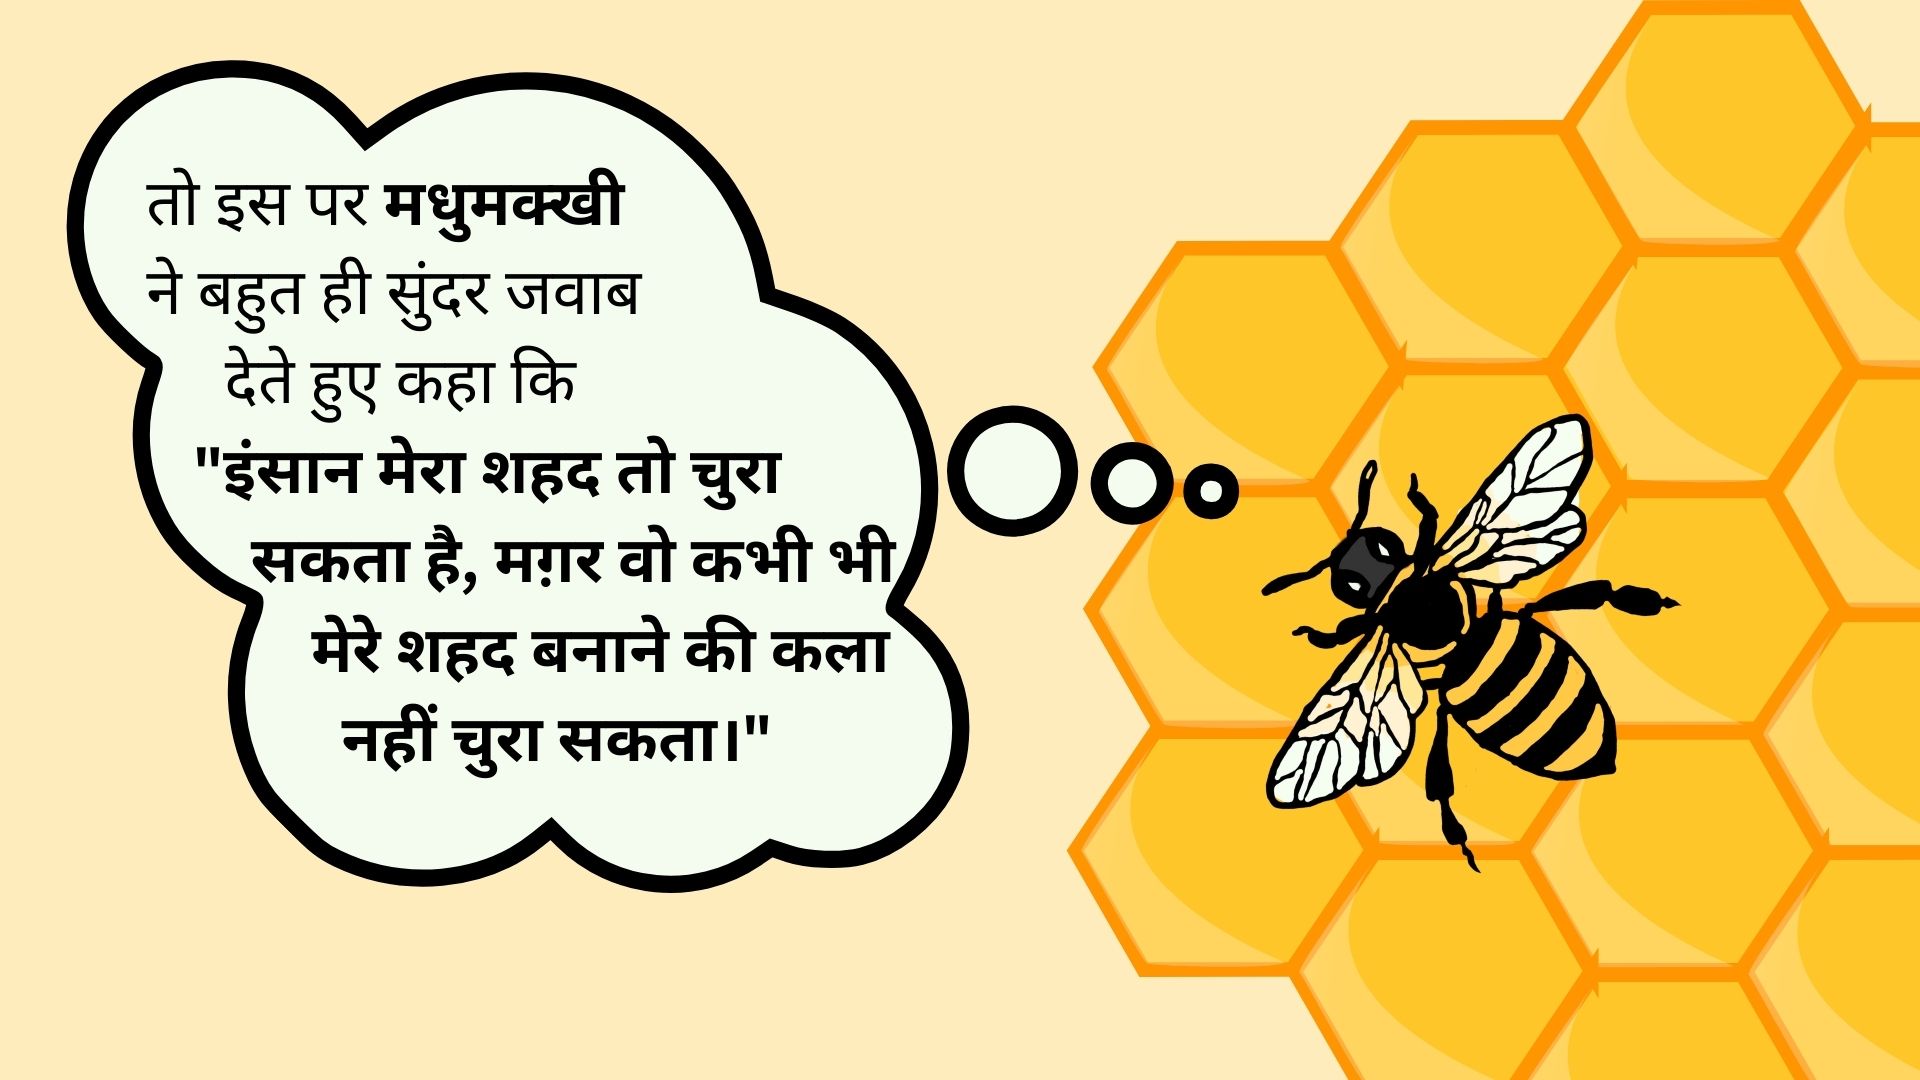 चिड़िया और मधुमक्खी की कहानी